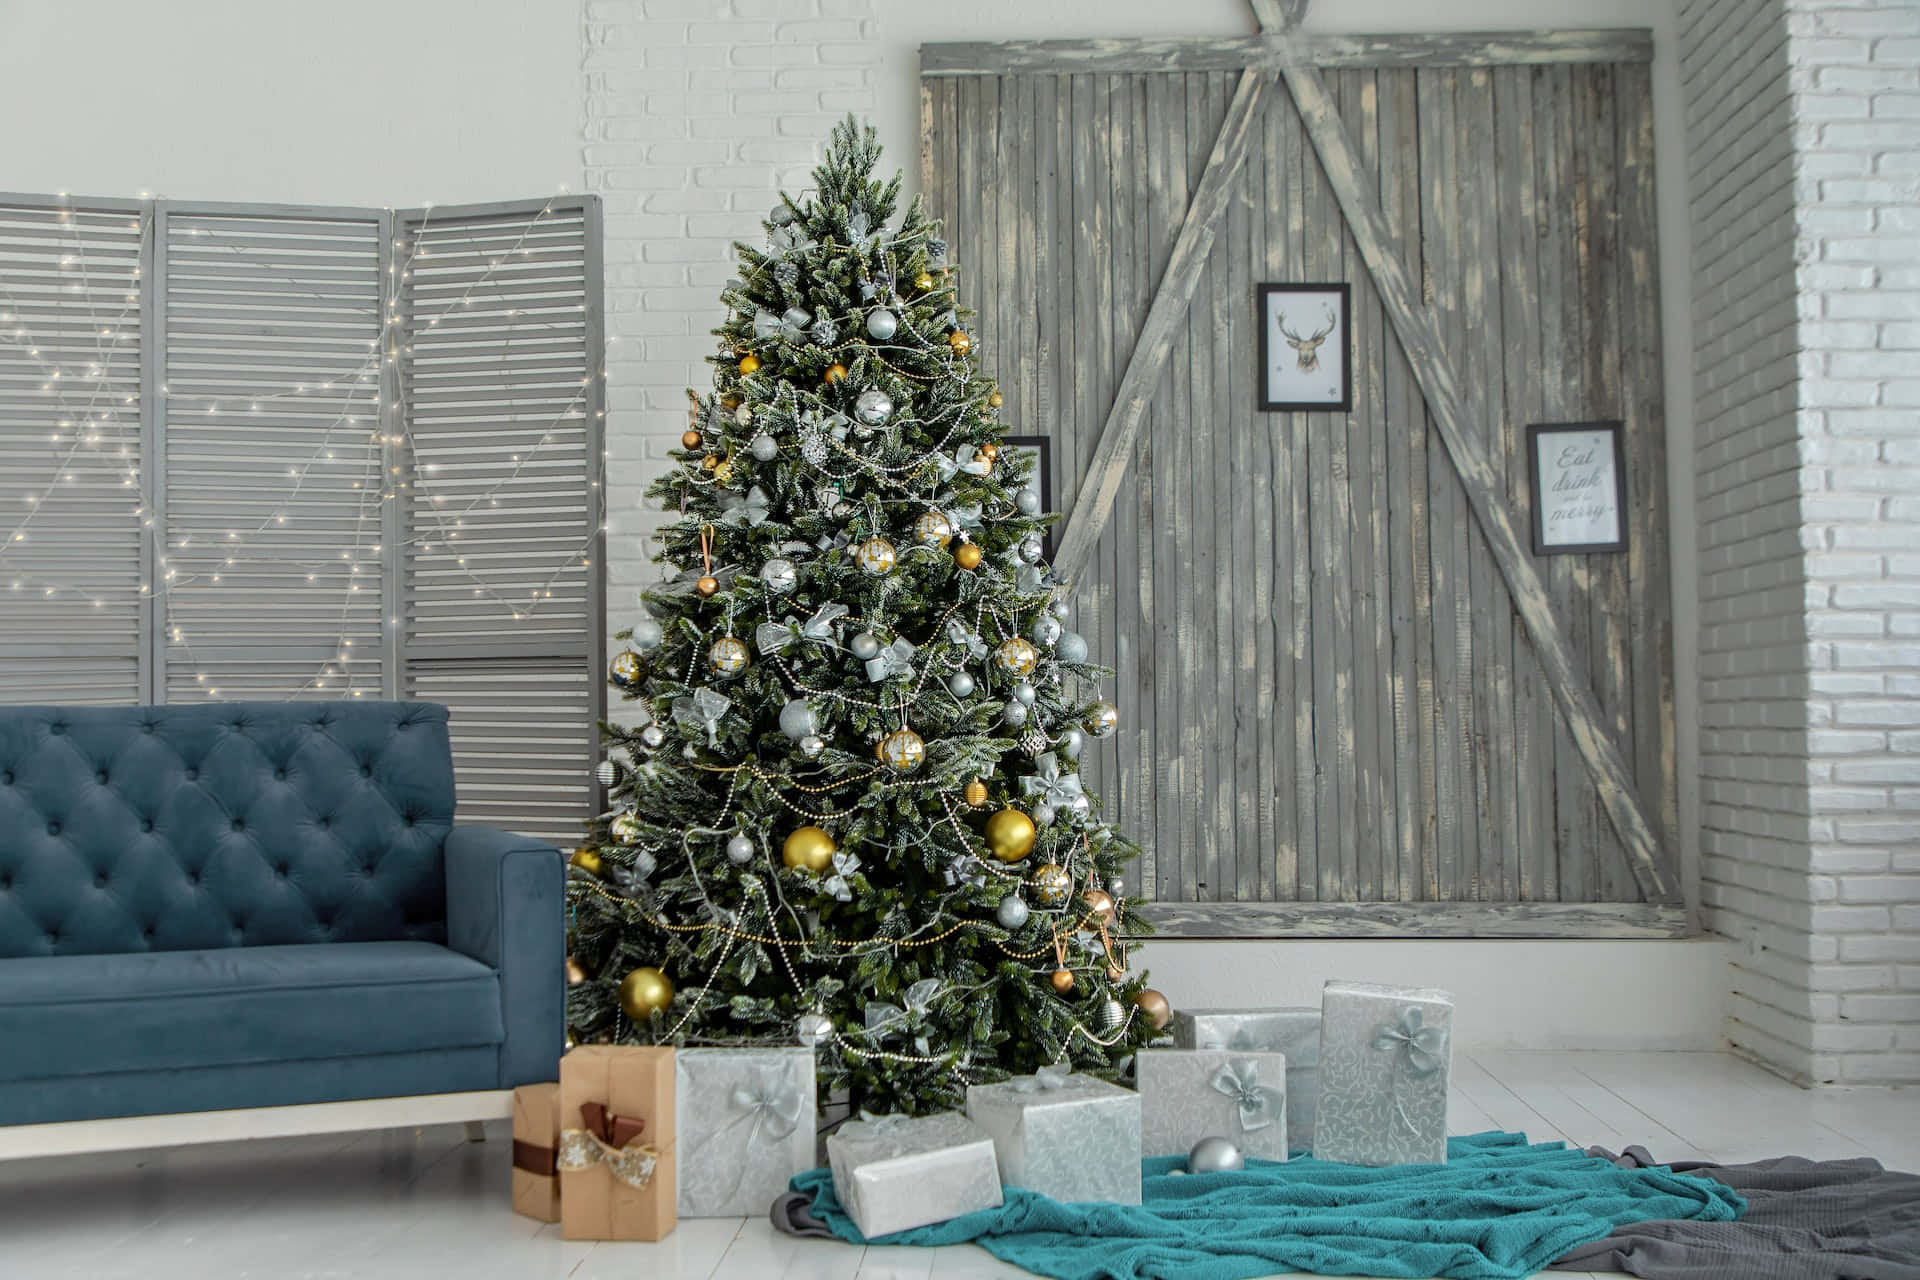 Einblaues Sofa Und Ein Weihnachtsbaum Vor Einer Holzwand. Wallpaper